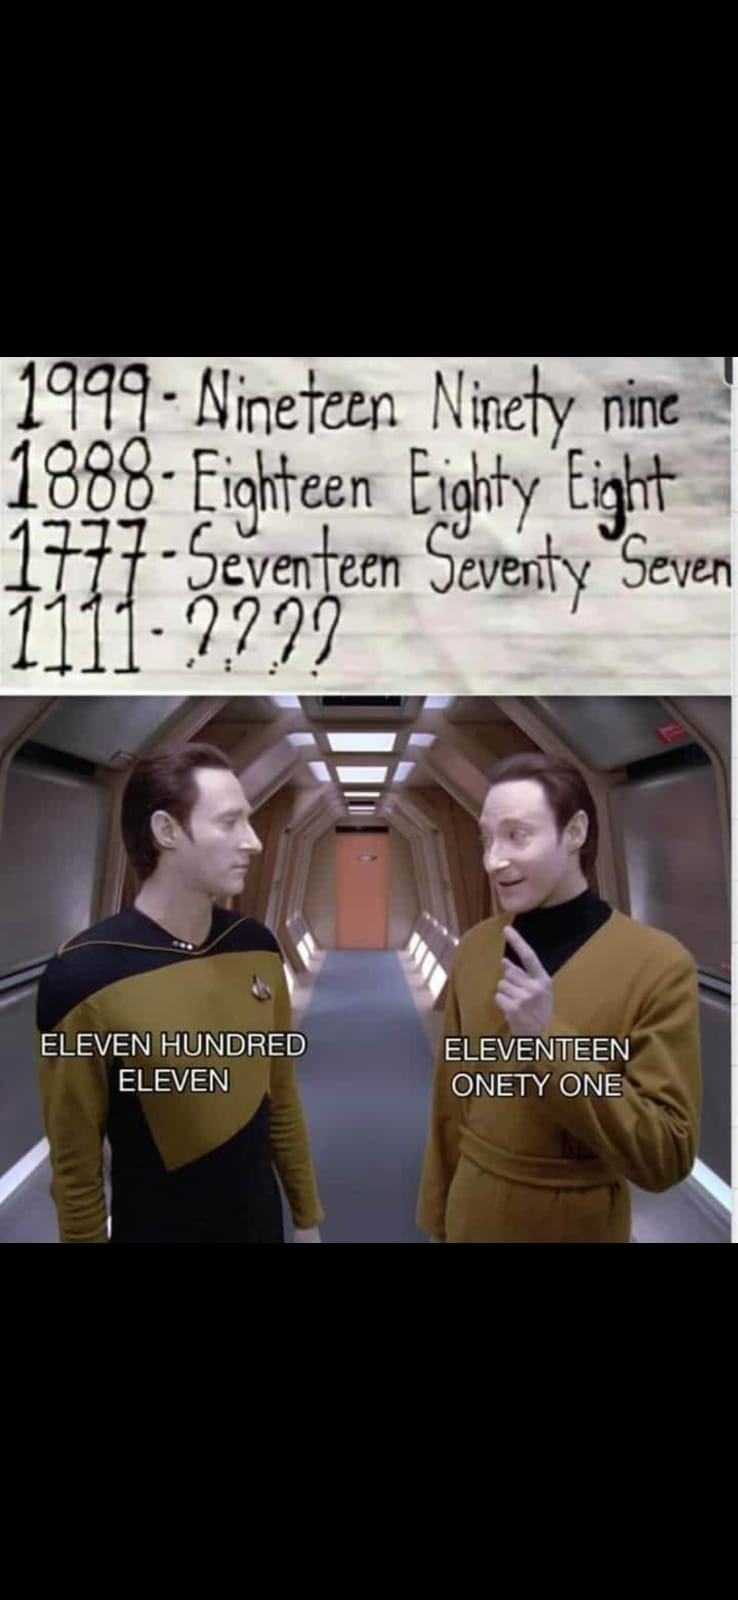 The eleventy ones.